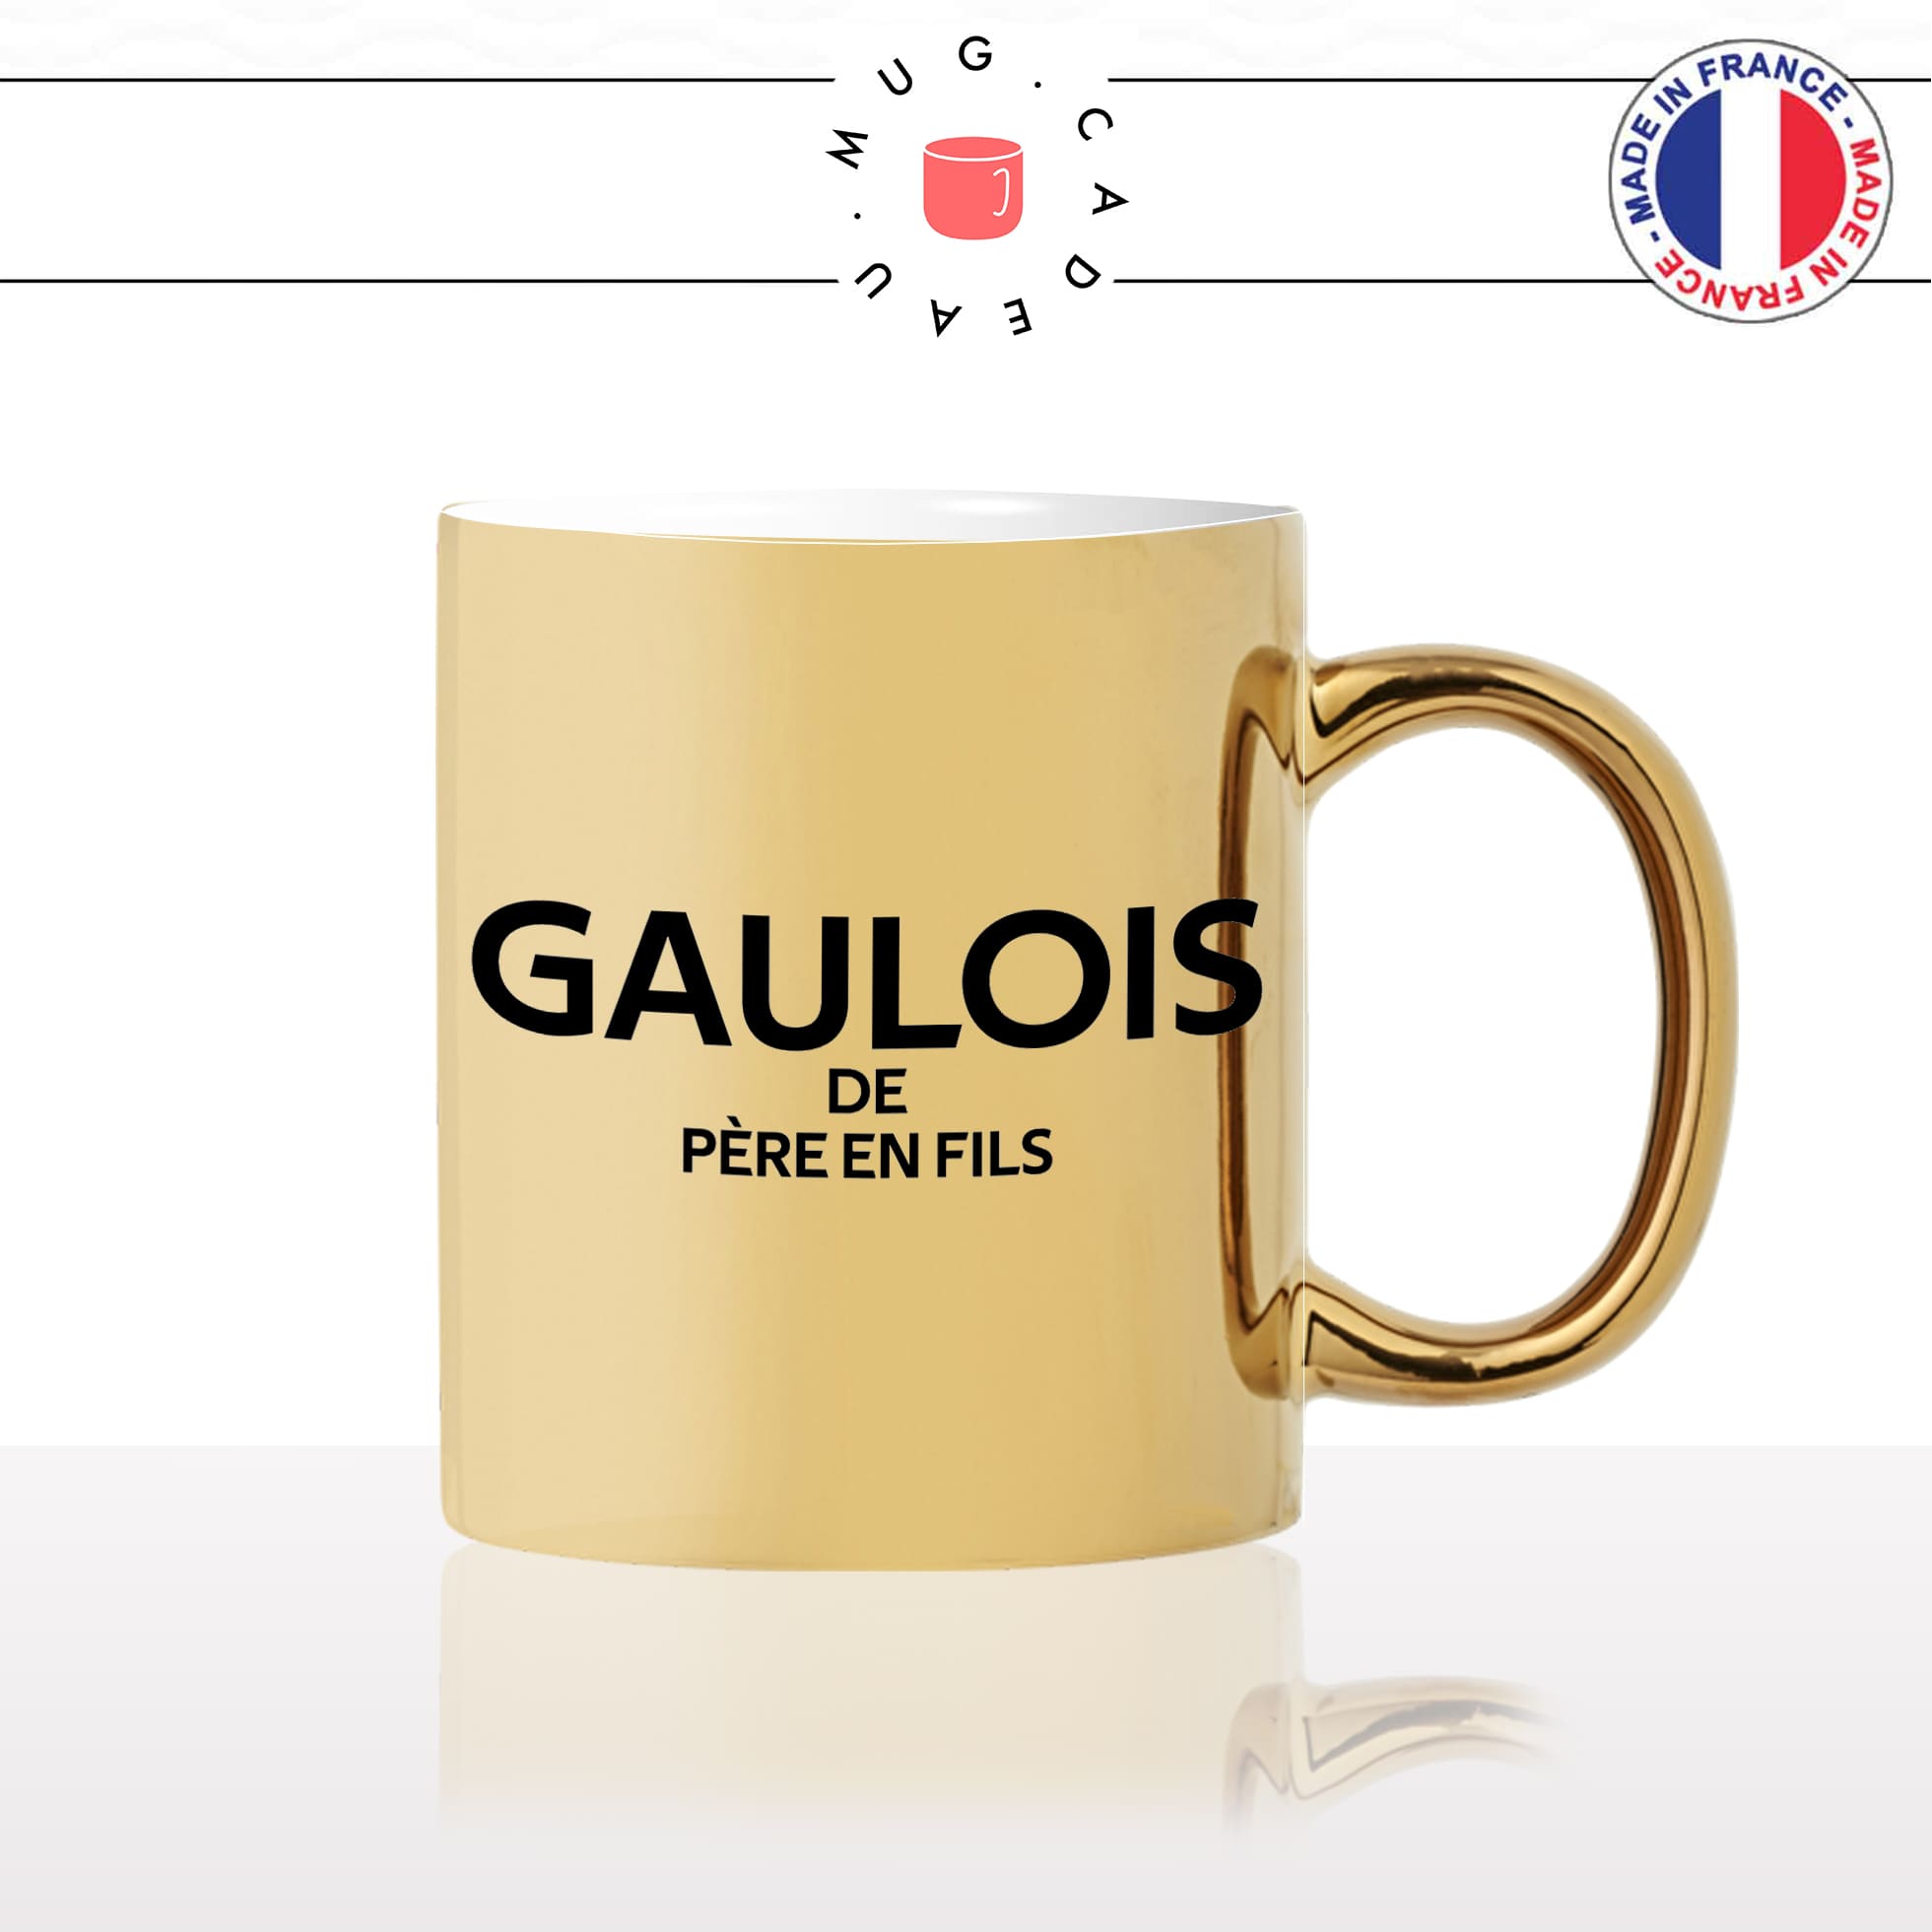 mug-tasse-or-gold-doré-brillant-coq-gaulois-de-pere-en-fils-guerre-homme-pays-francais-france-histoitre-gaule-idée-cadeau-originale-fun-unique2